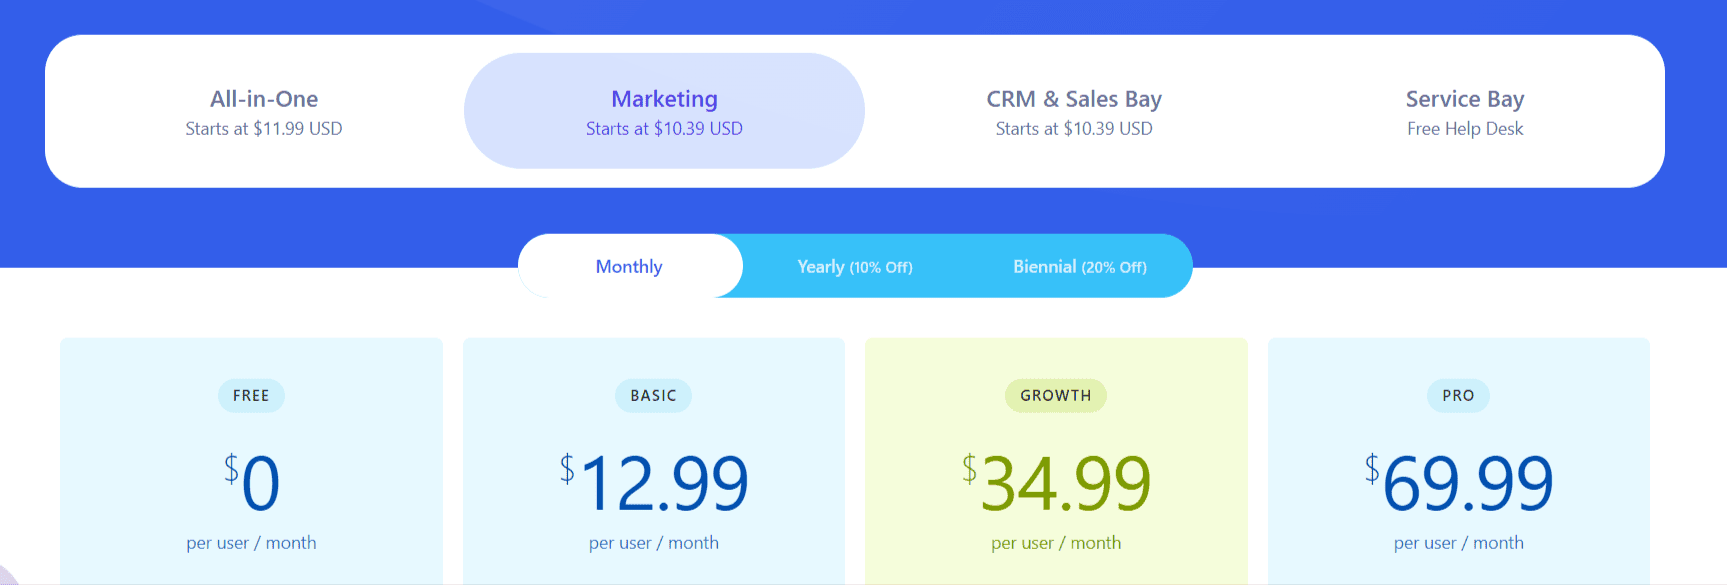 EngageBay marketing bay pricing